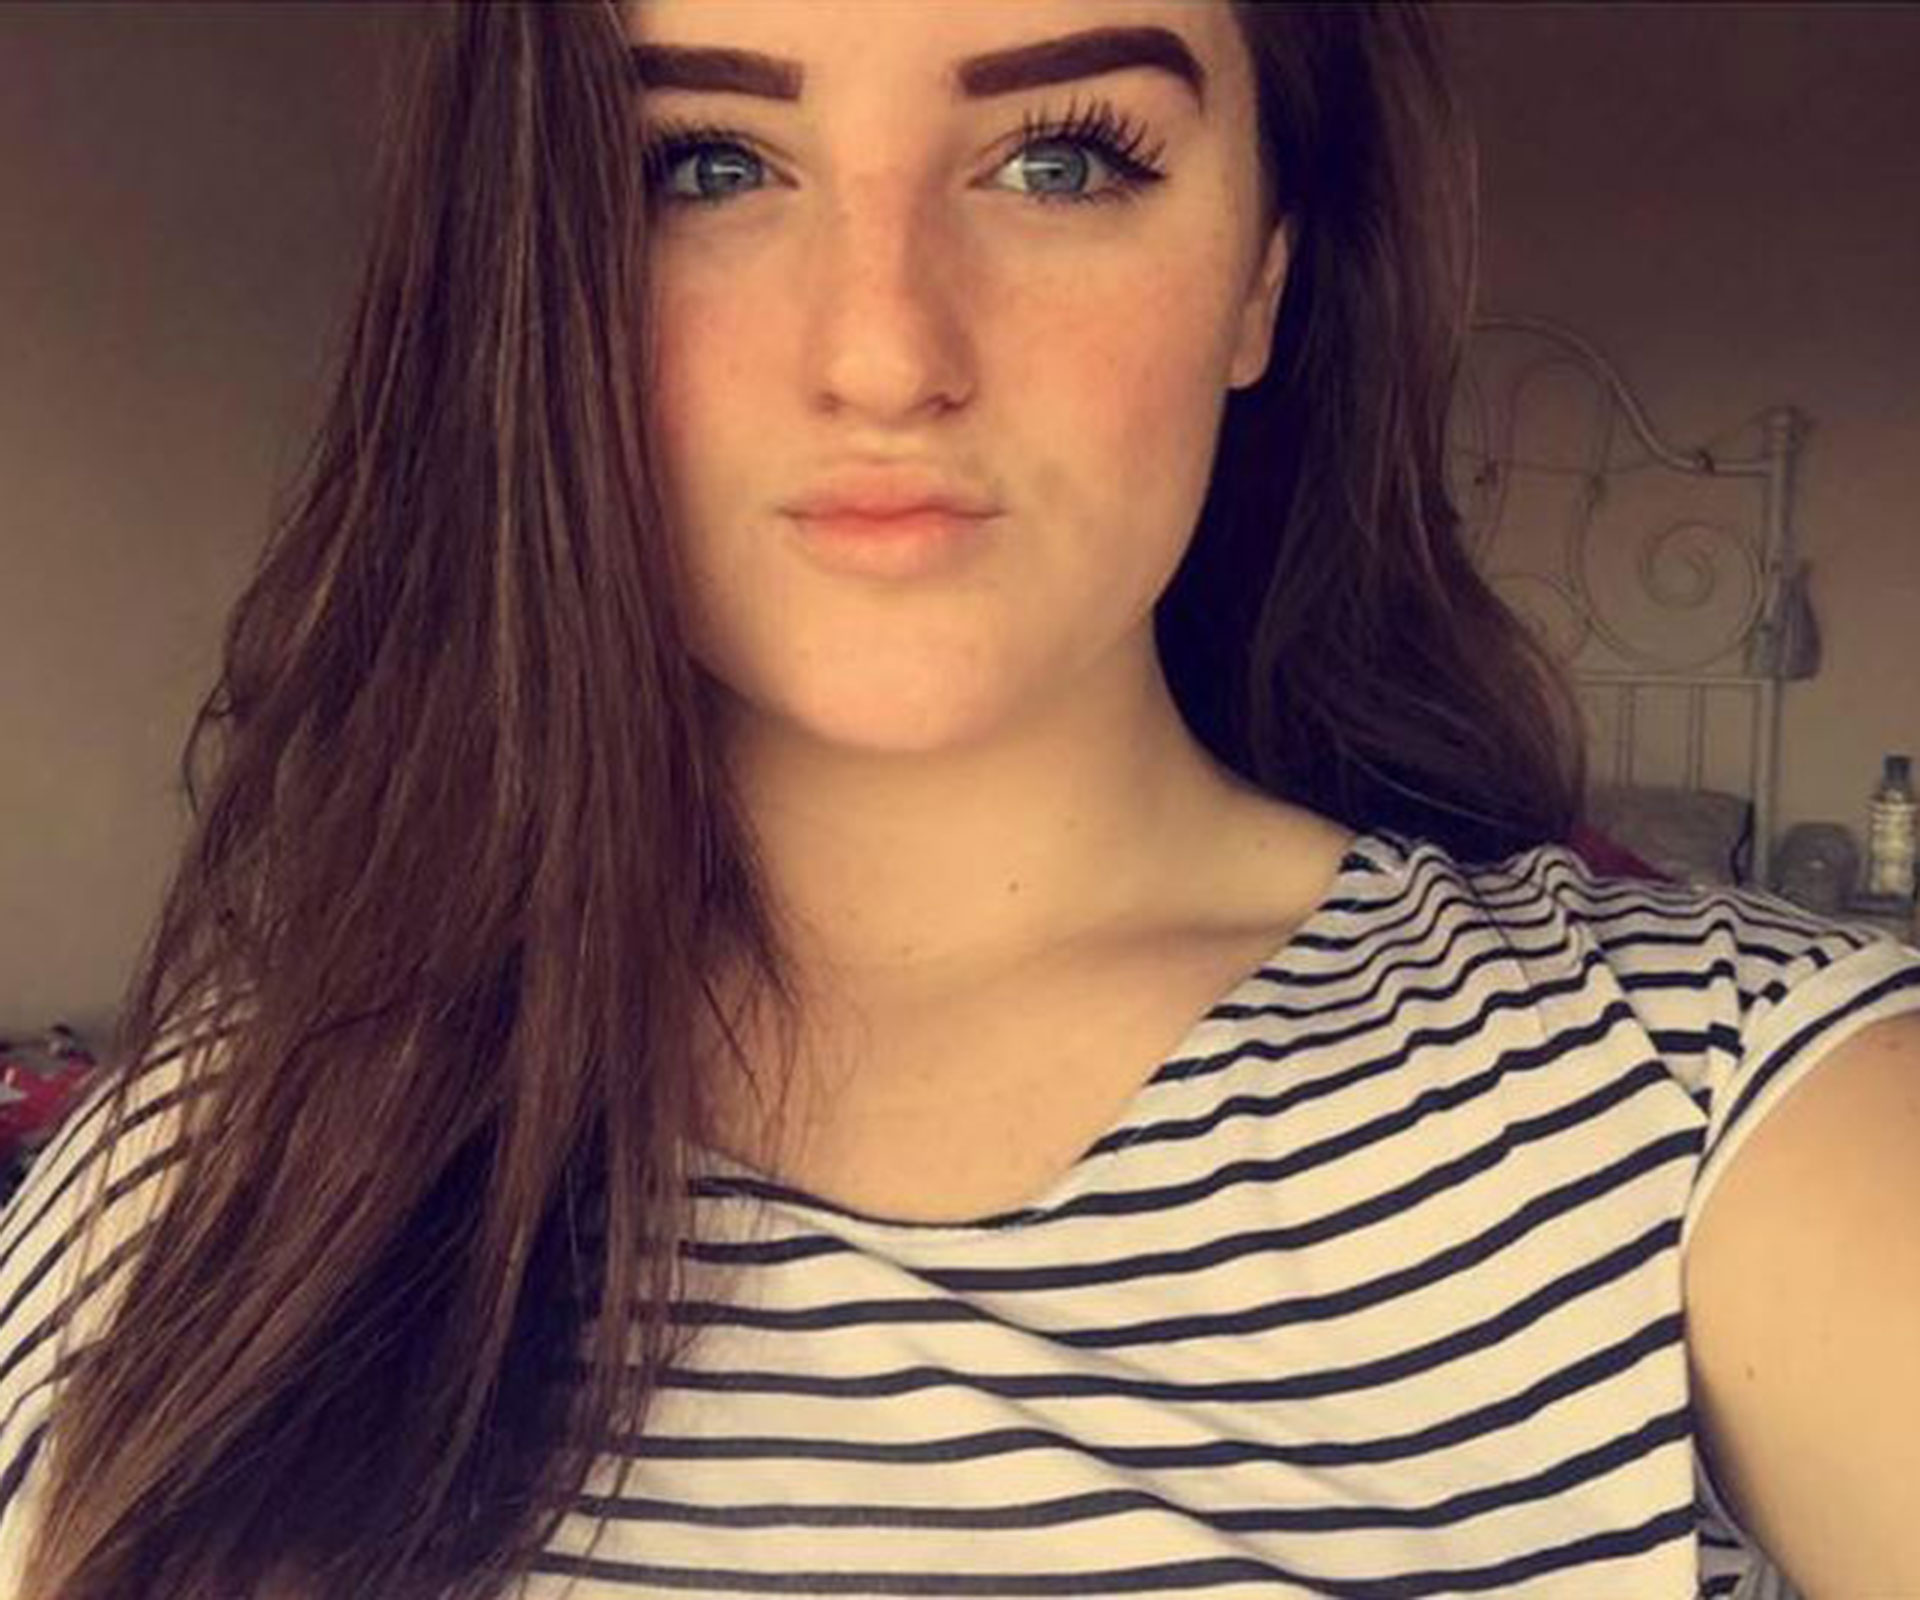 Schoolgirl commits suicide over Instagram selfie